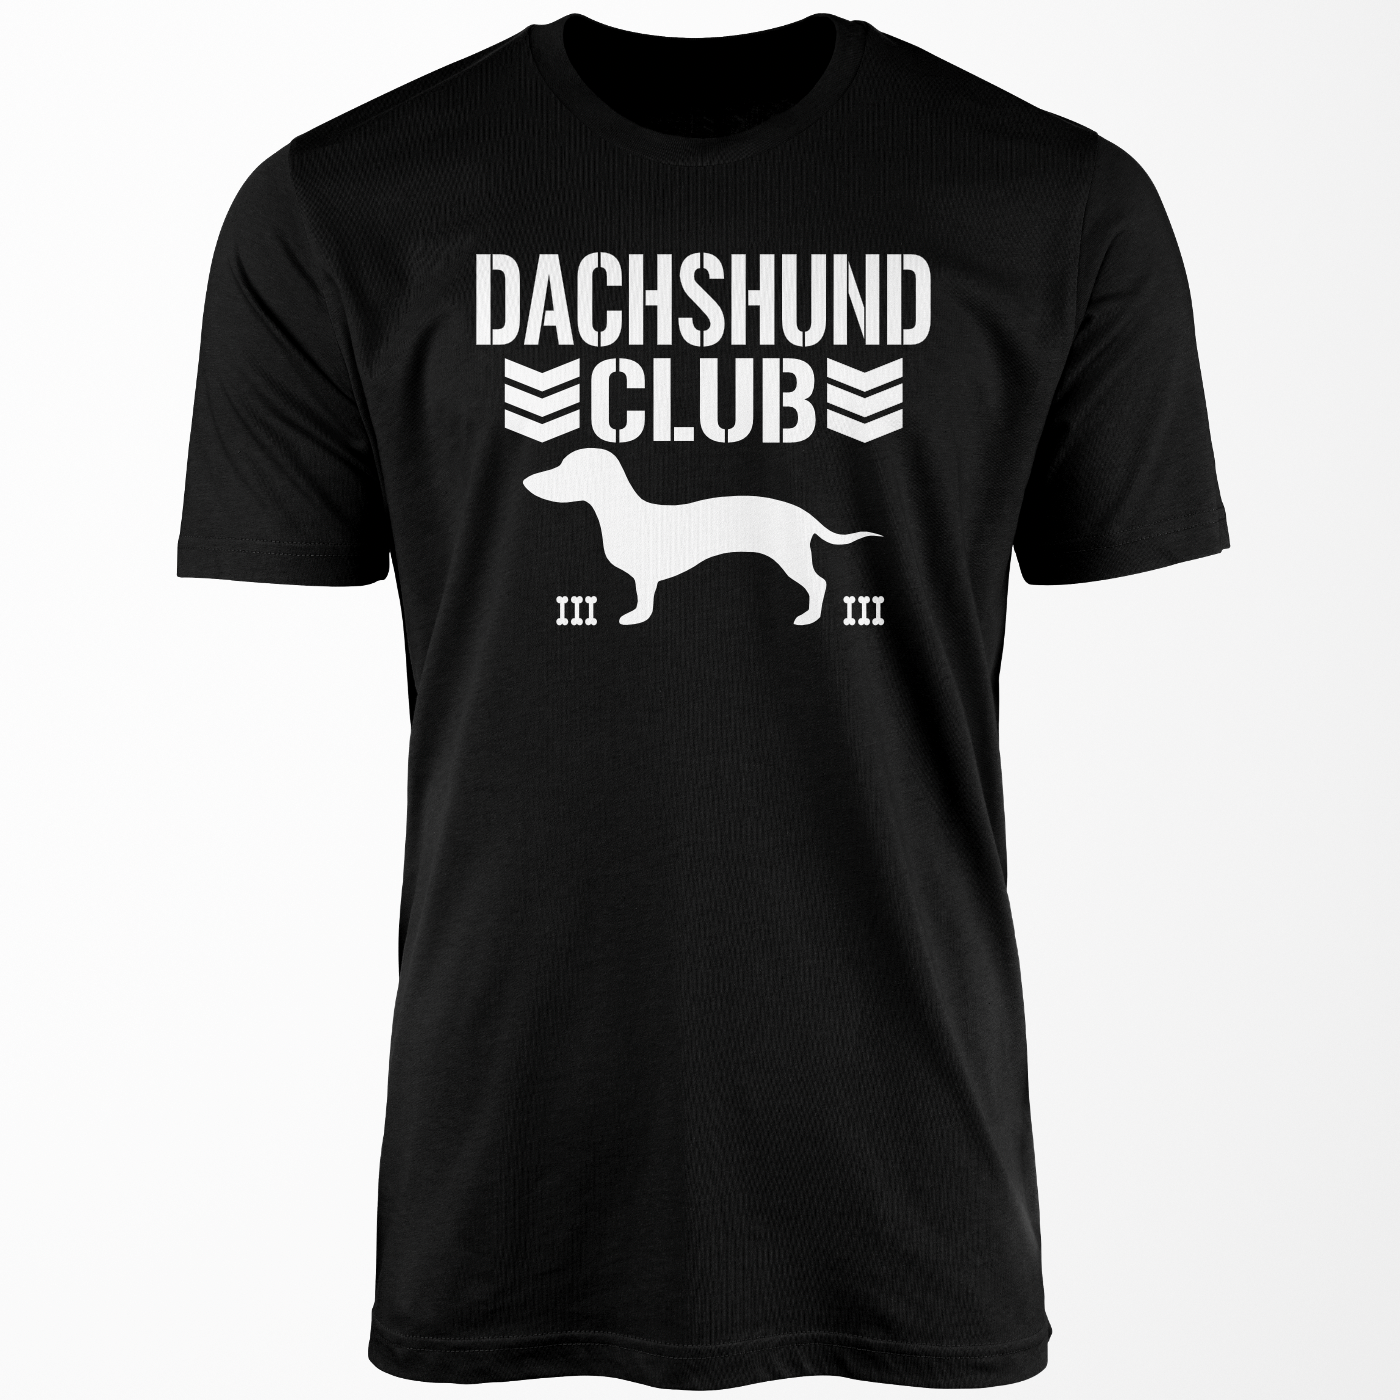 Dachshund Club T Shirt with a Miniature Dachshund in the center